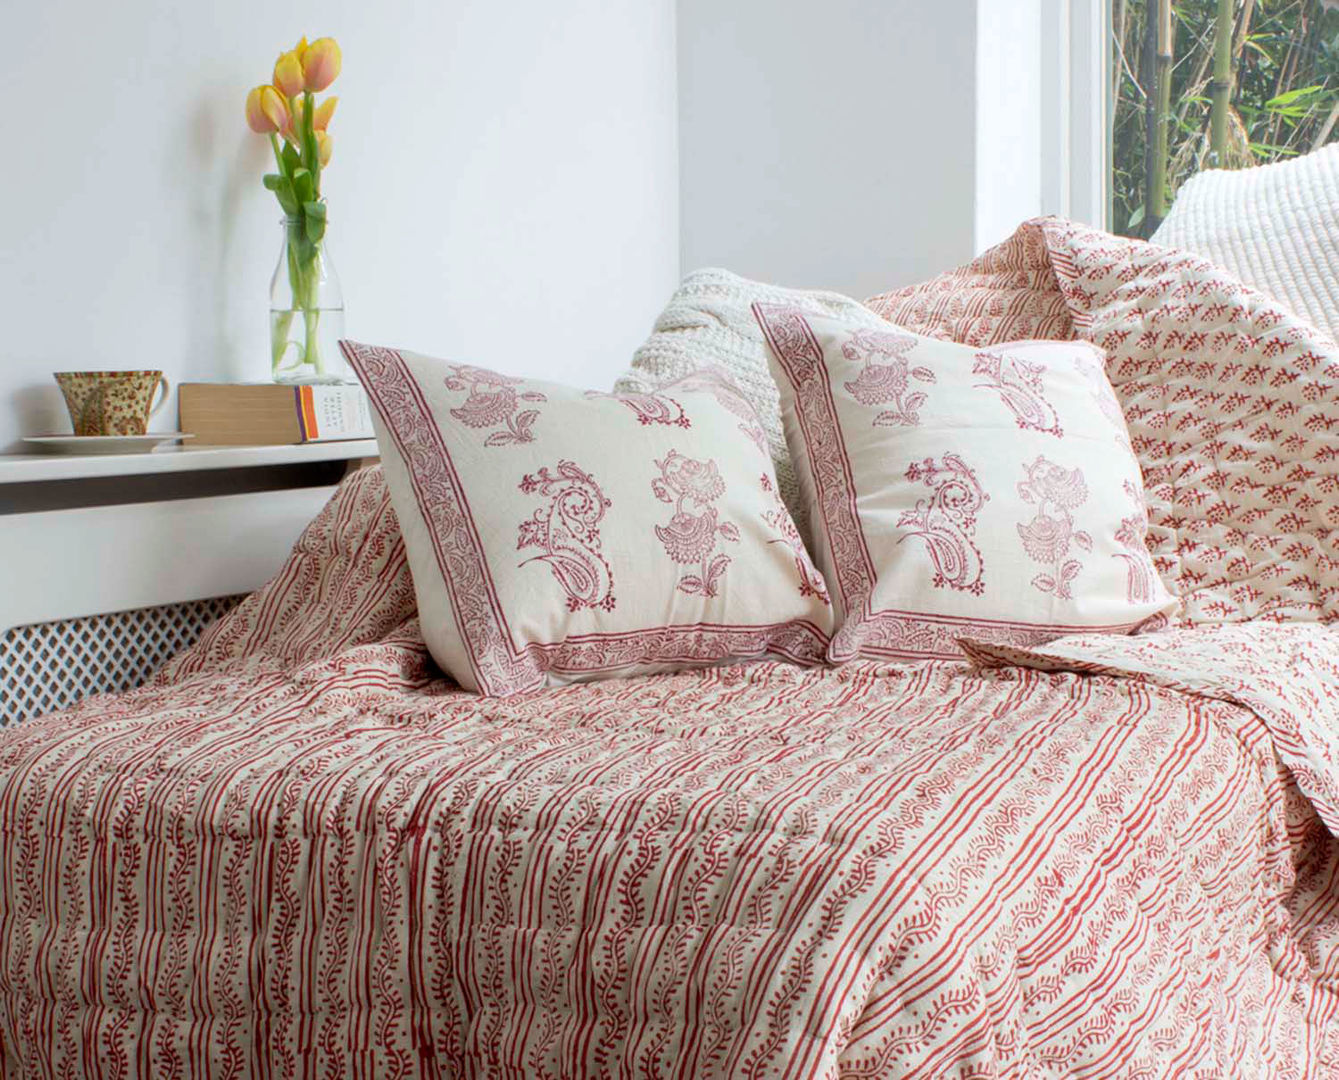 Hand Block Print Quilt Cranberry DesignRaaga Bedroom Textiles